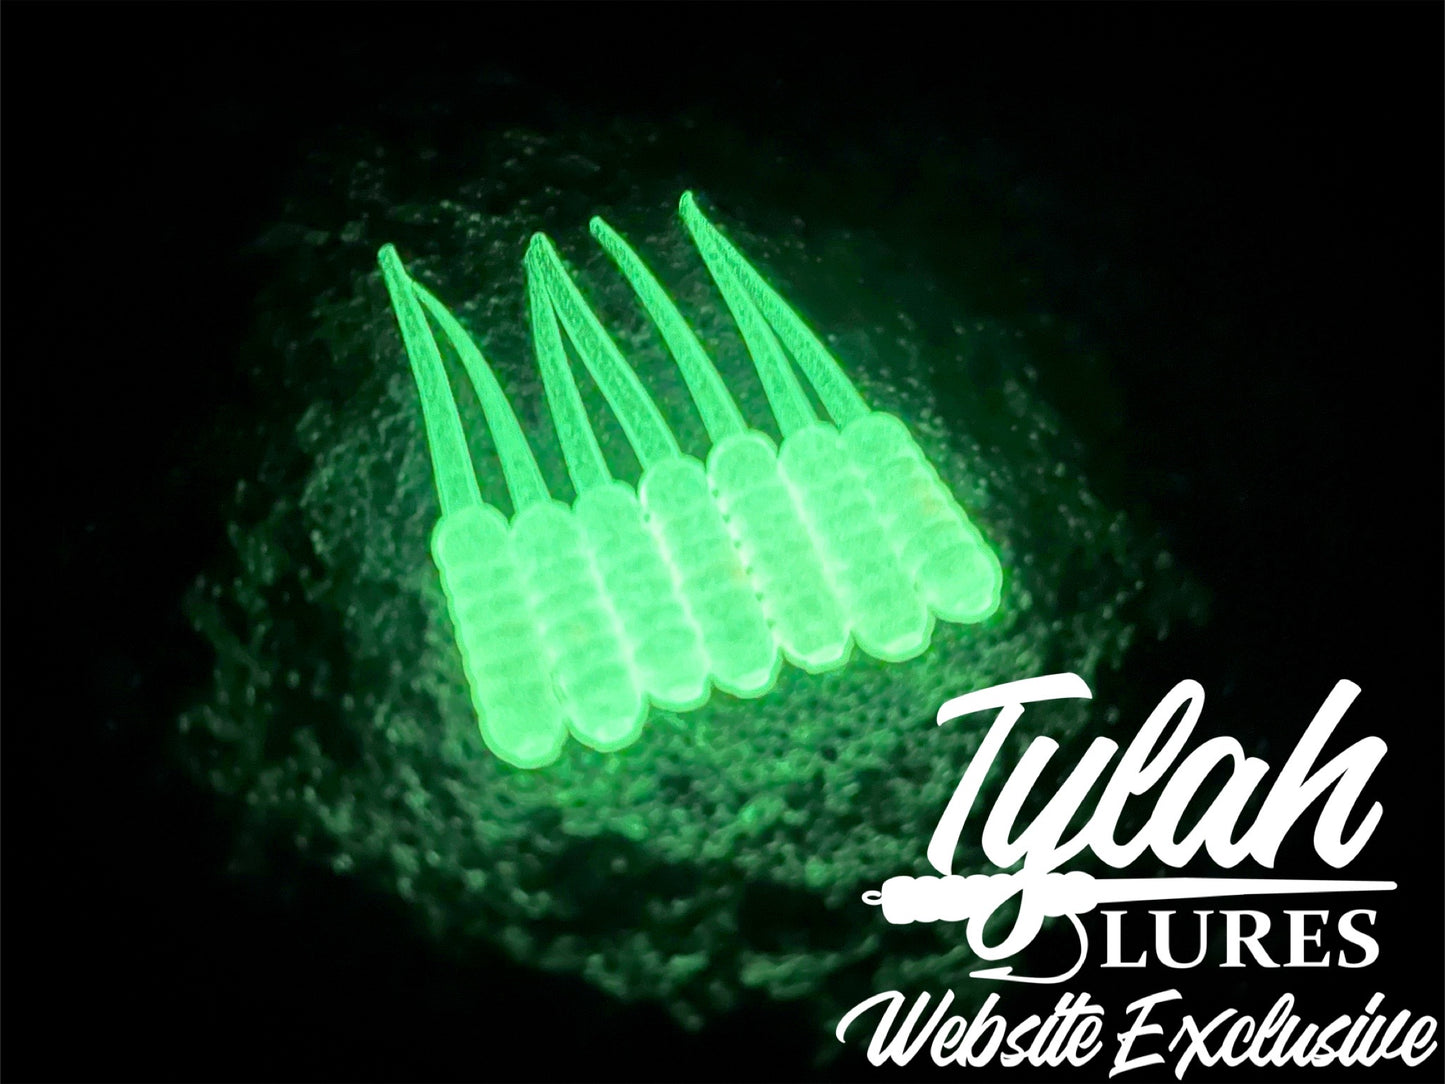 TylahLures Website Exclusive UV Green Glow 1.5in.